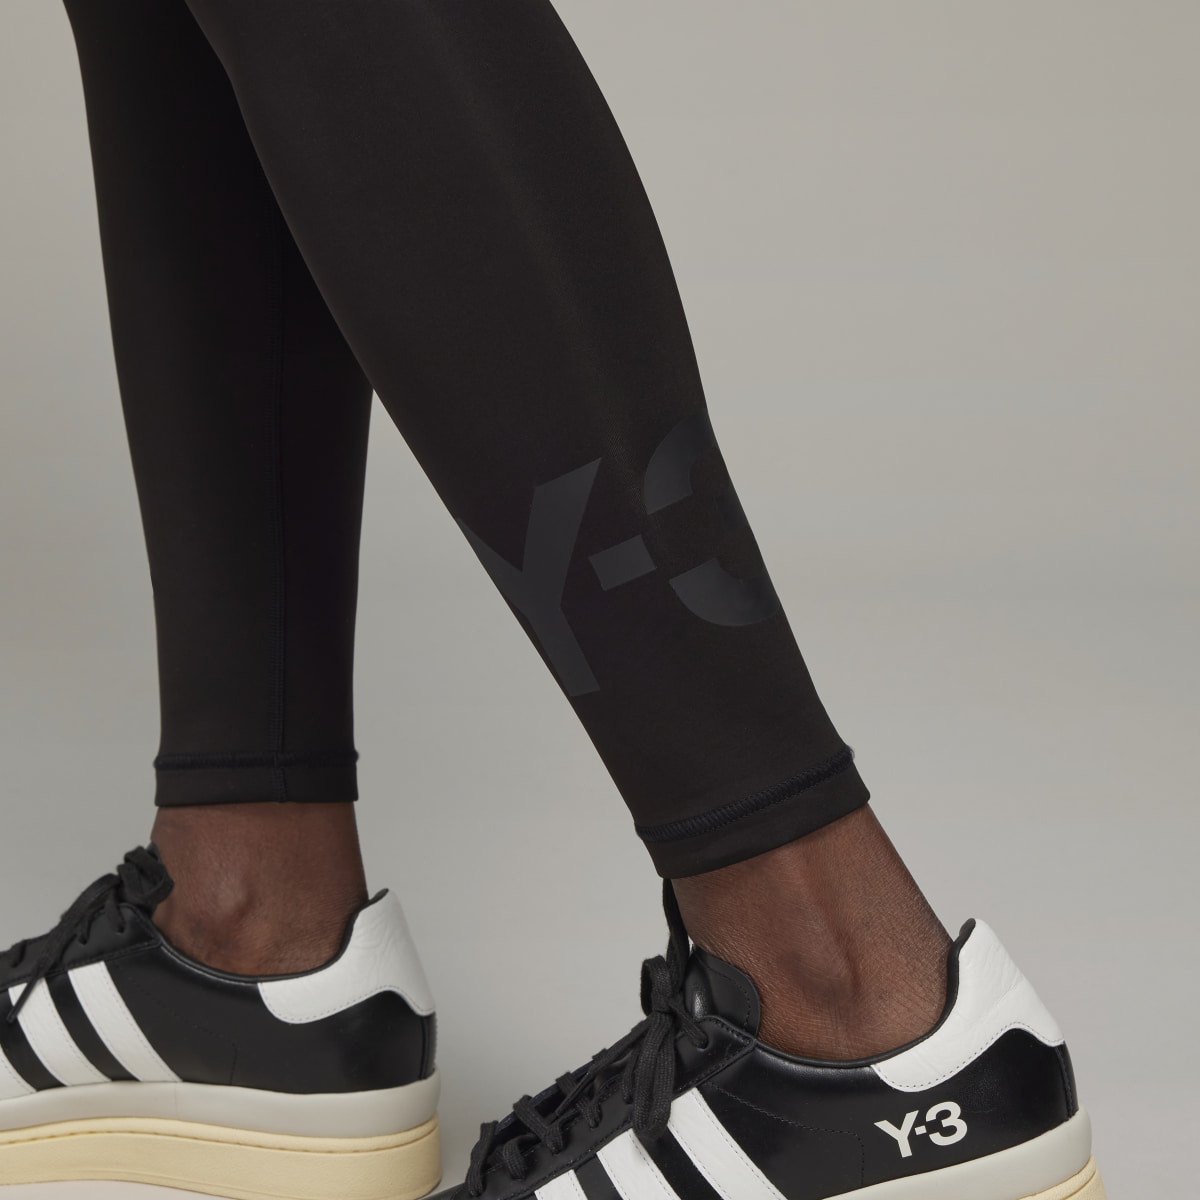 Adidas Y-3 Classic Tights. 7